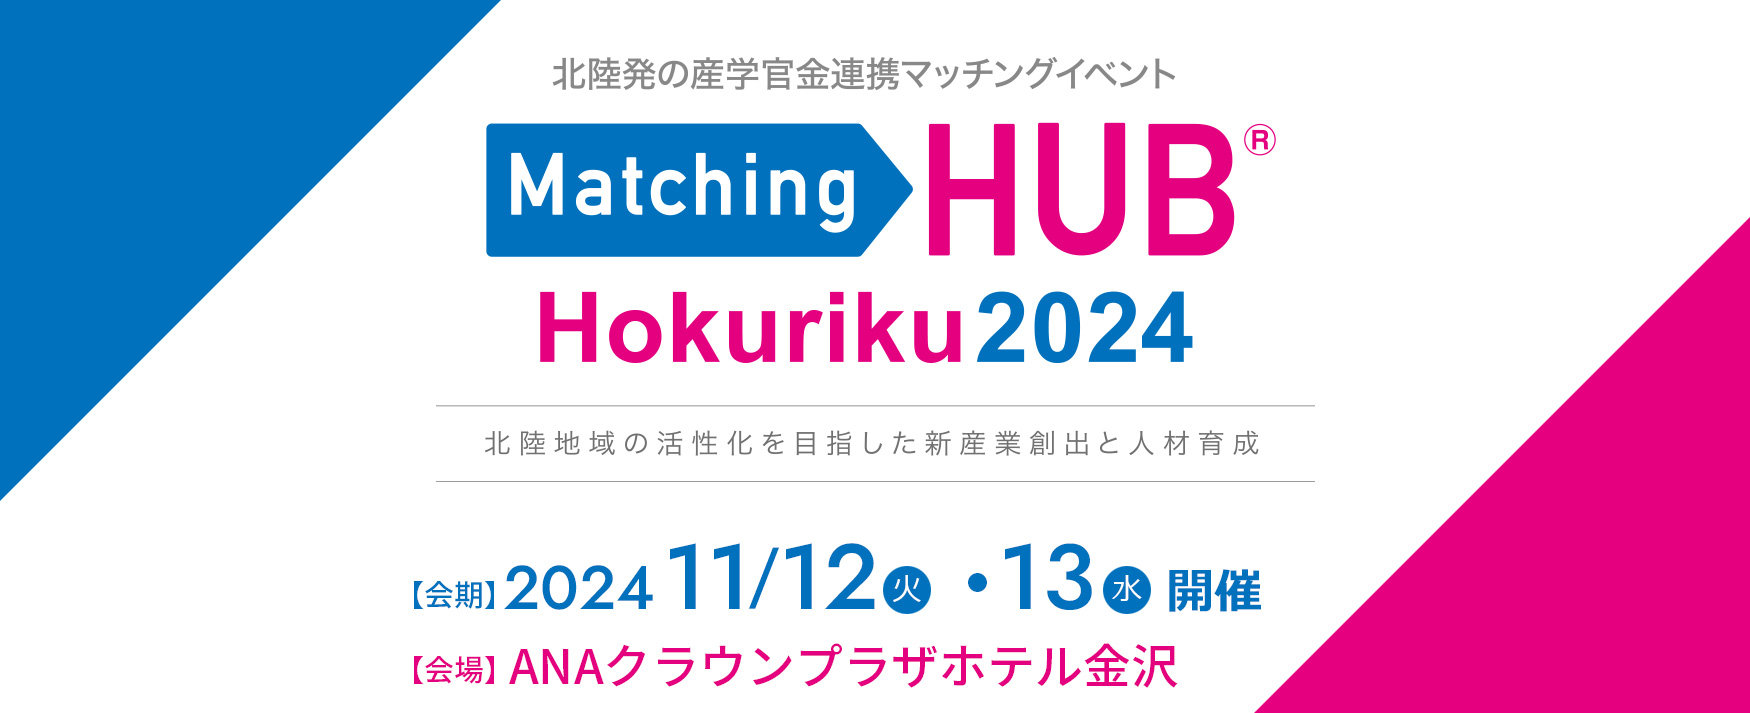 Matching HUB Hokuriku 2024